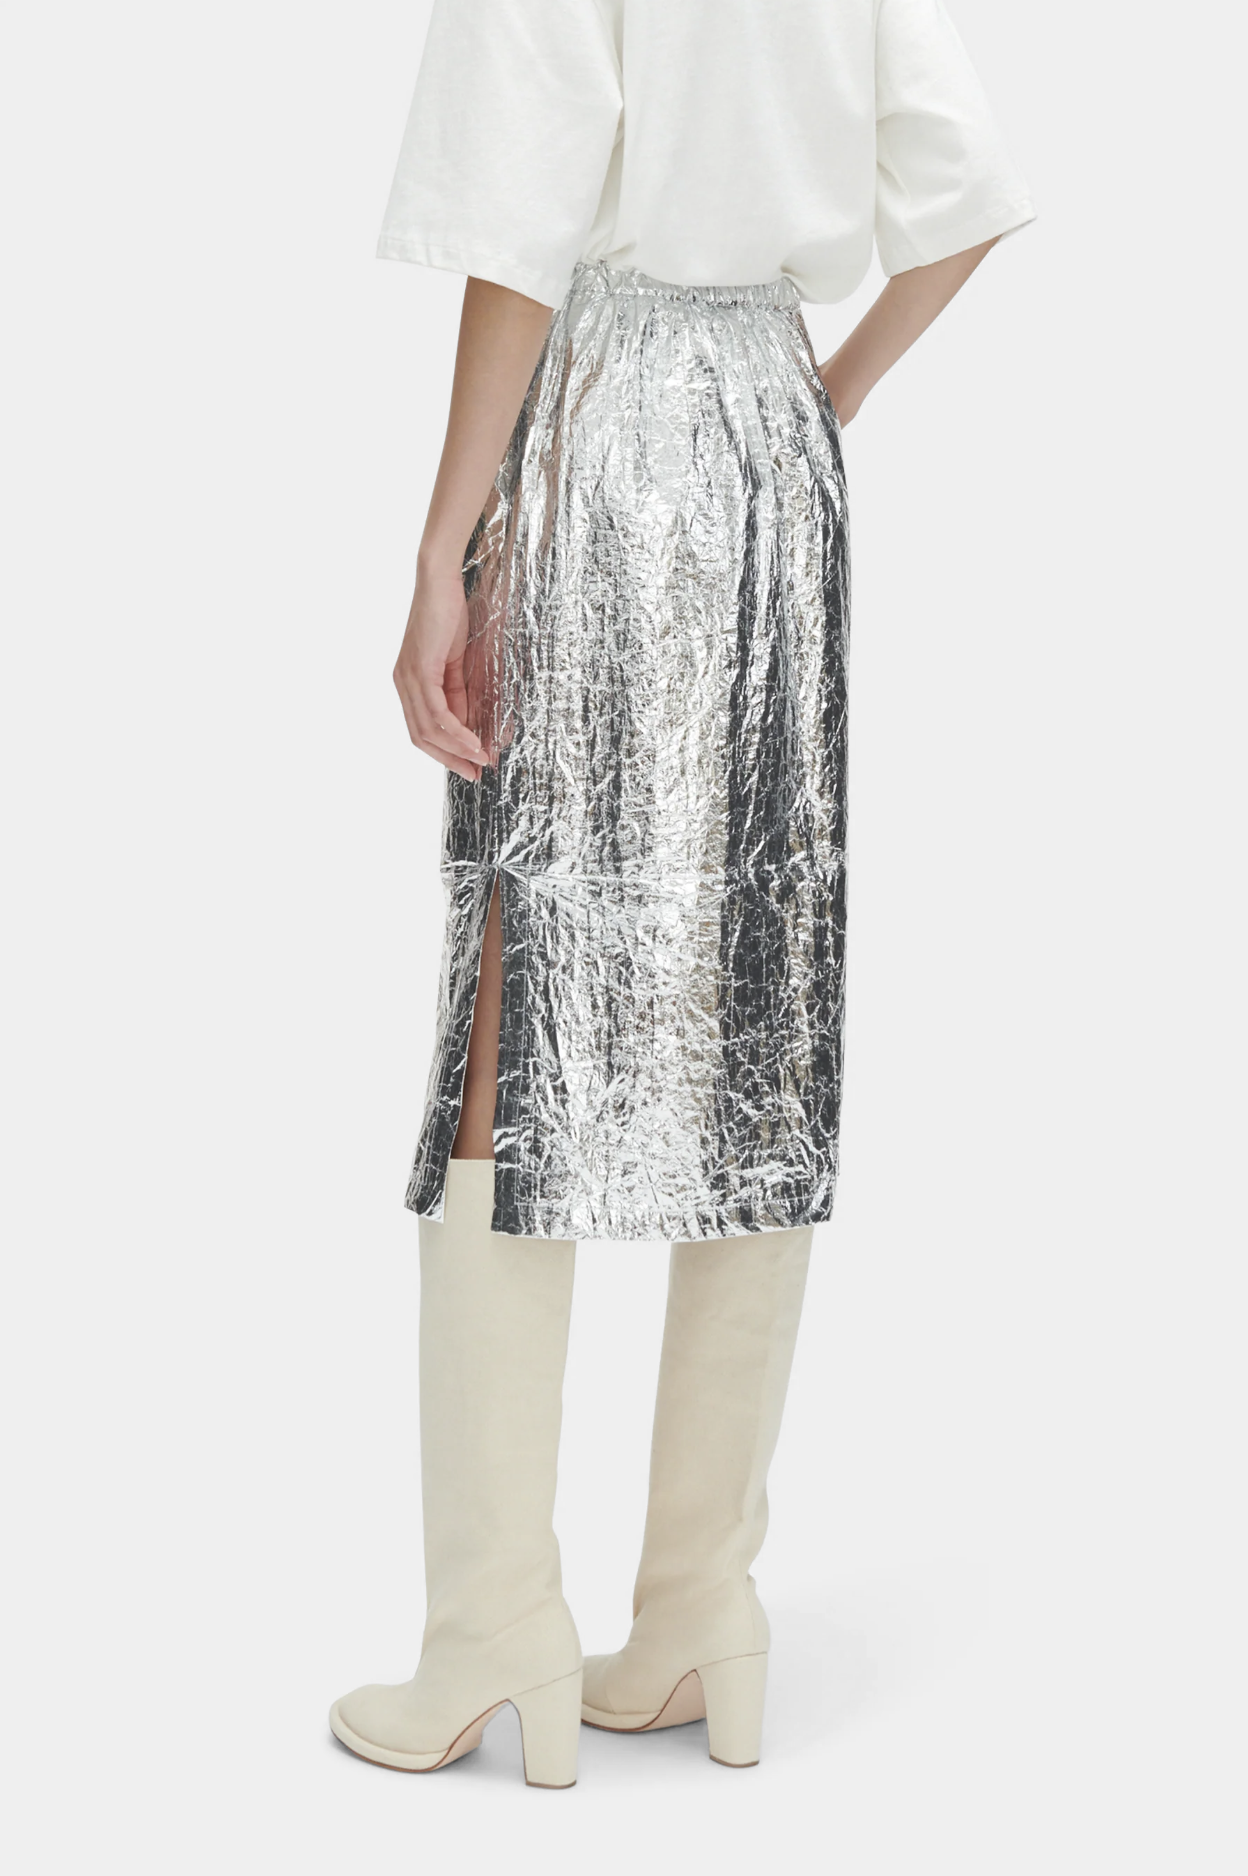 Mott Skirt in Silver by Rachel Comey http://www.shoprecital.com